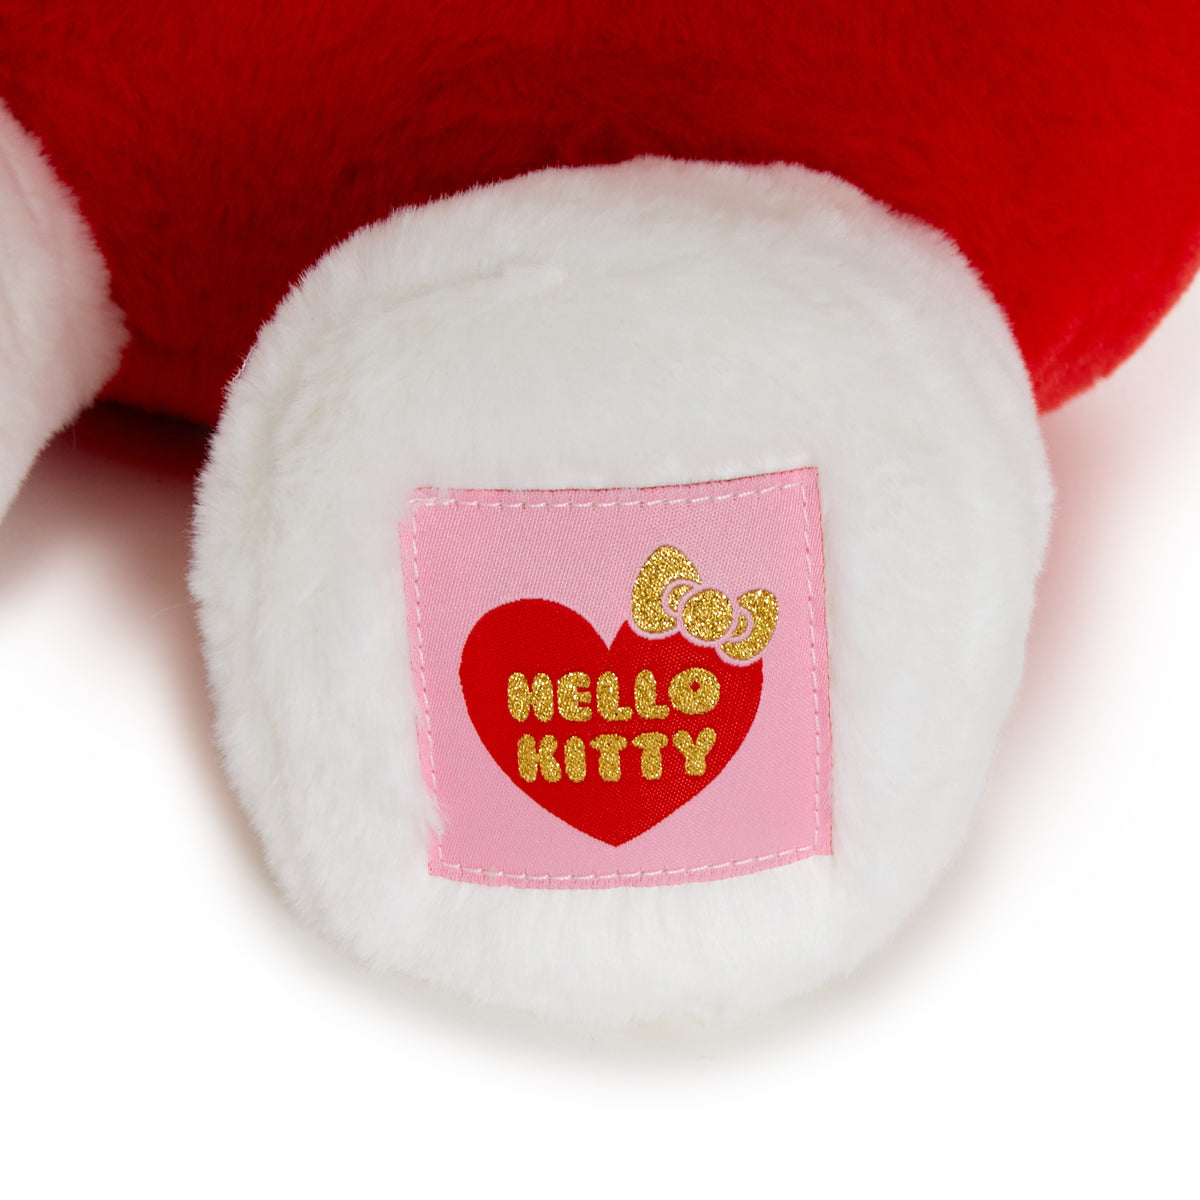 Hello Kitty Heart Plush